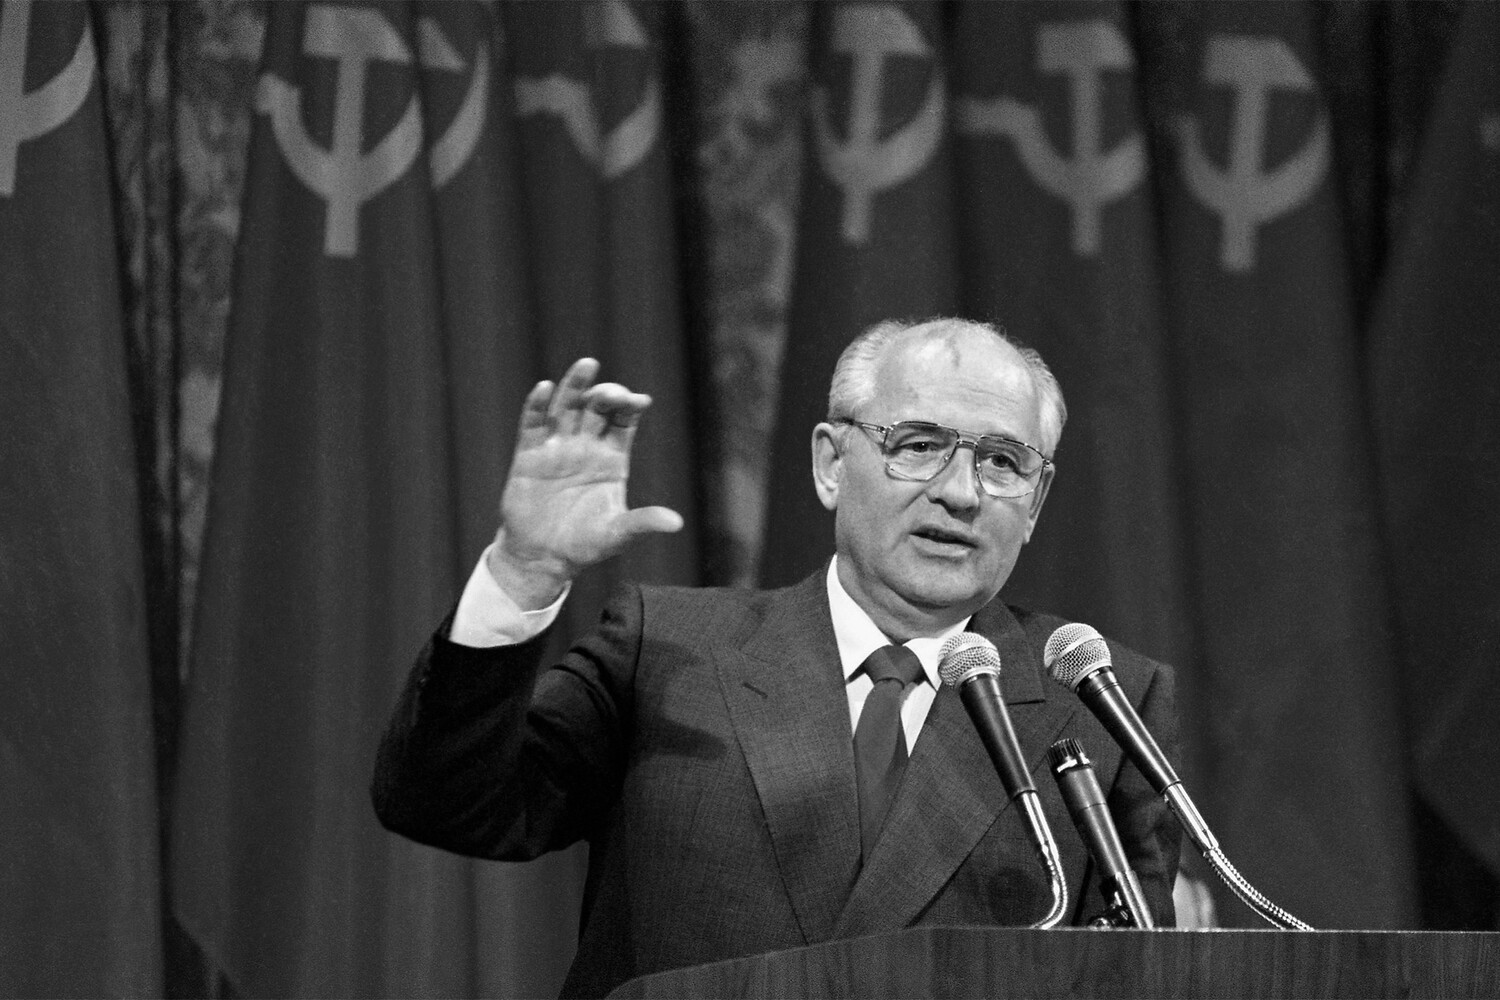 <b>Михаил Горбачев (2 марта 1931 — 30 августа 2022) </b>— последний генеральный секретарь ЦК КПСС, первый и единственный президент СССР (1990-1991)